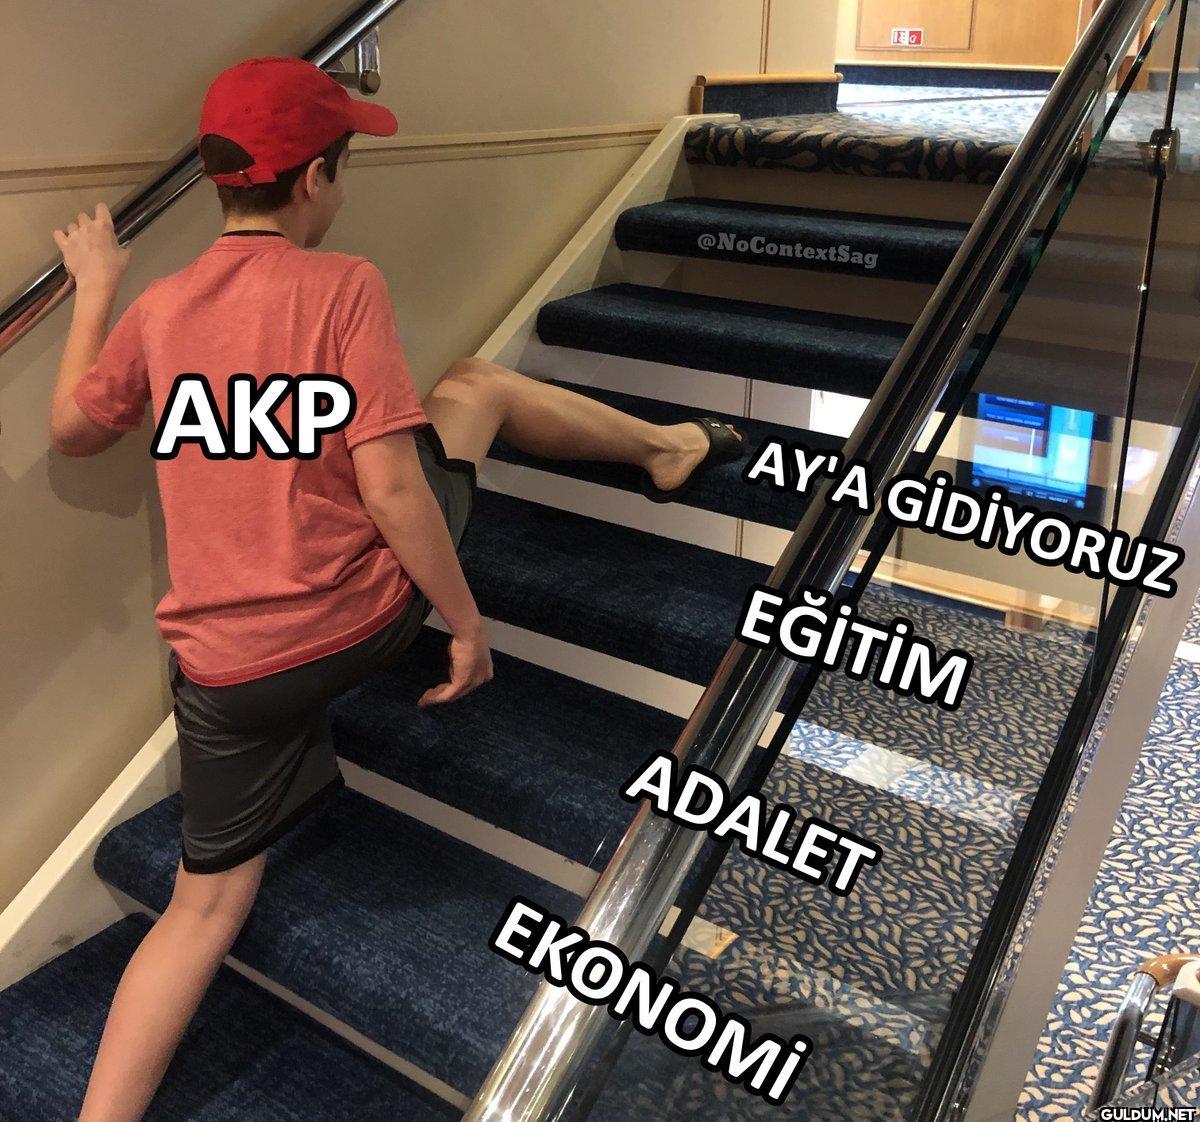 AKP @NoContextSag AY'A...